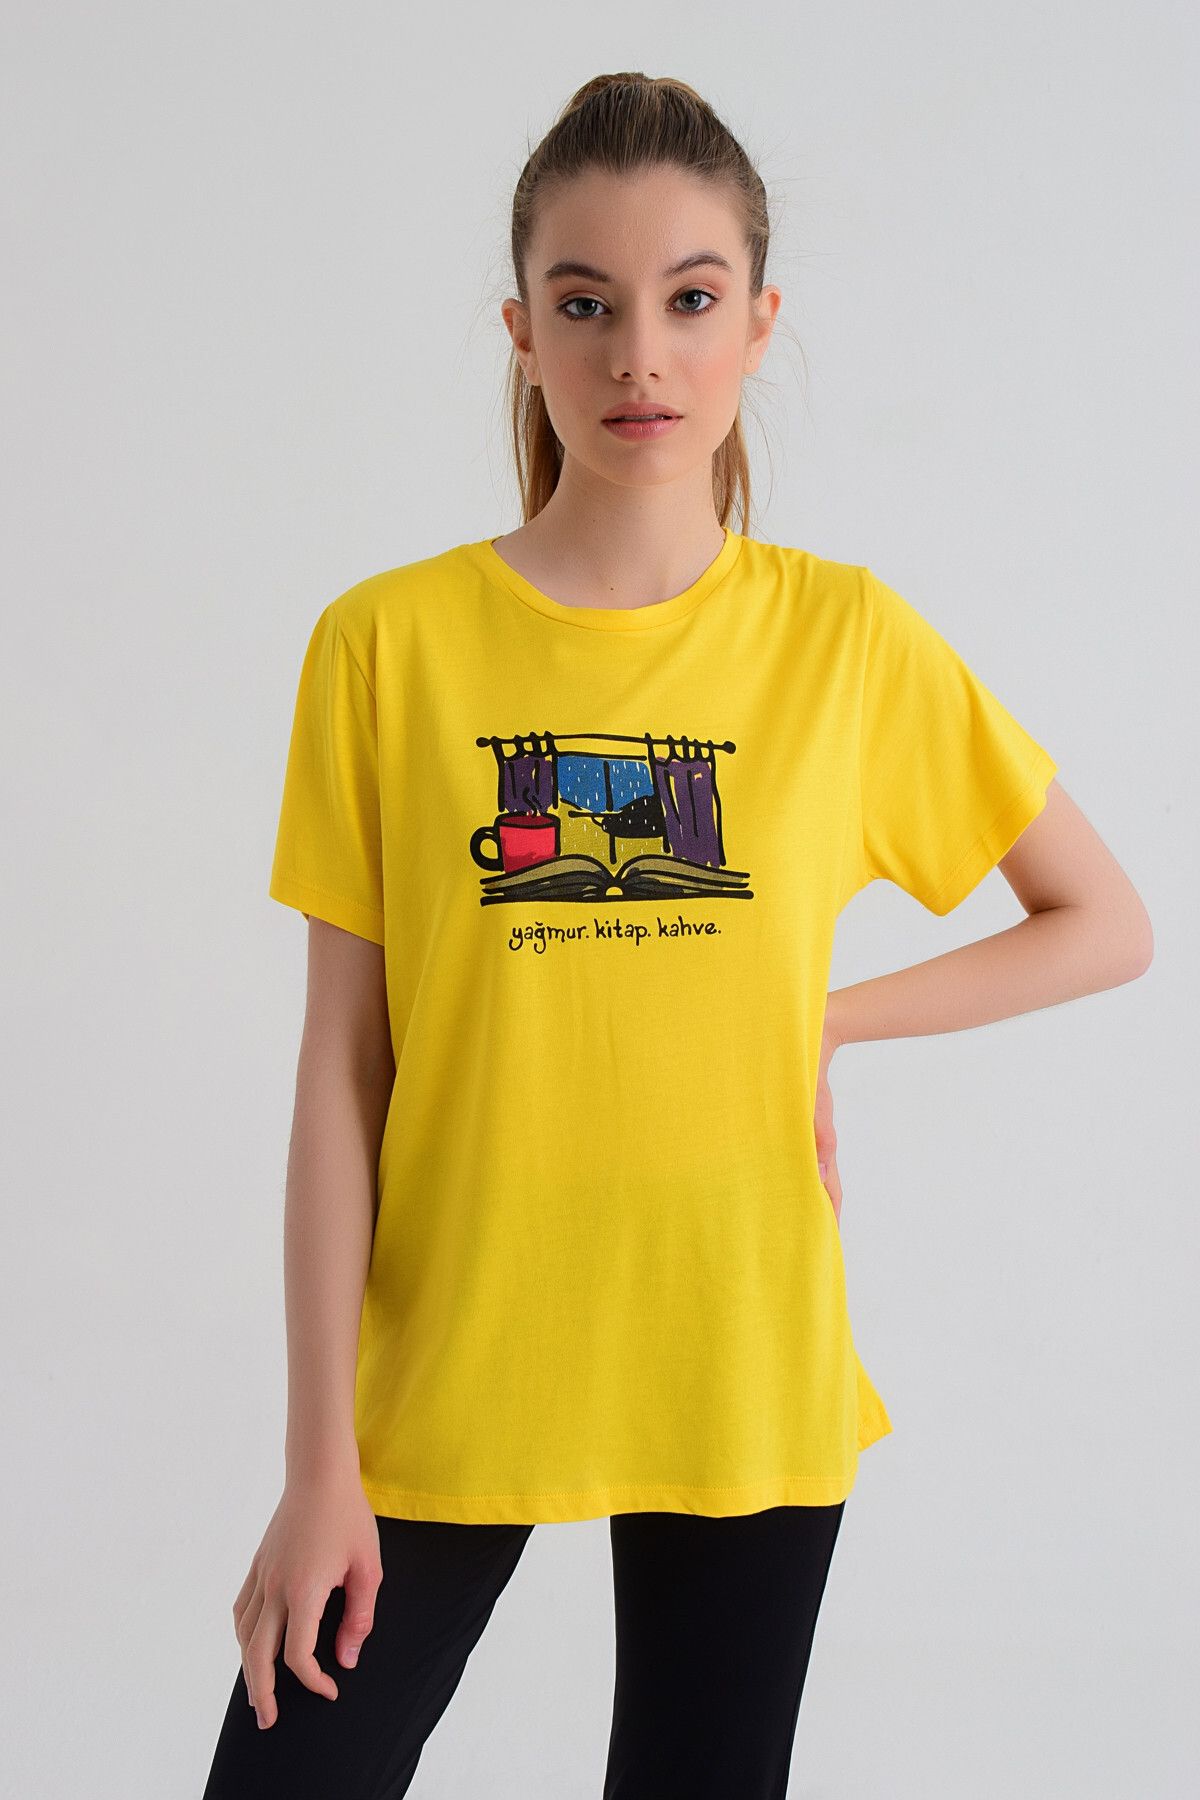 b-fit Kadın Kısa Kollu Baskılı T-shirt Wormie Yağmur Kitap Kahve - Sarı